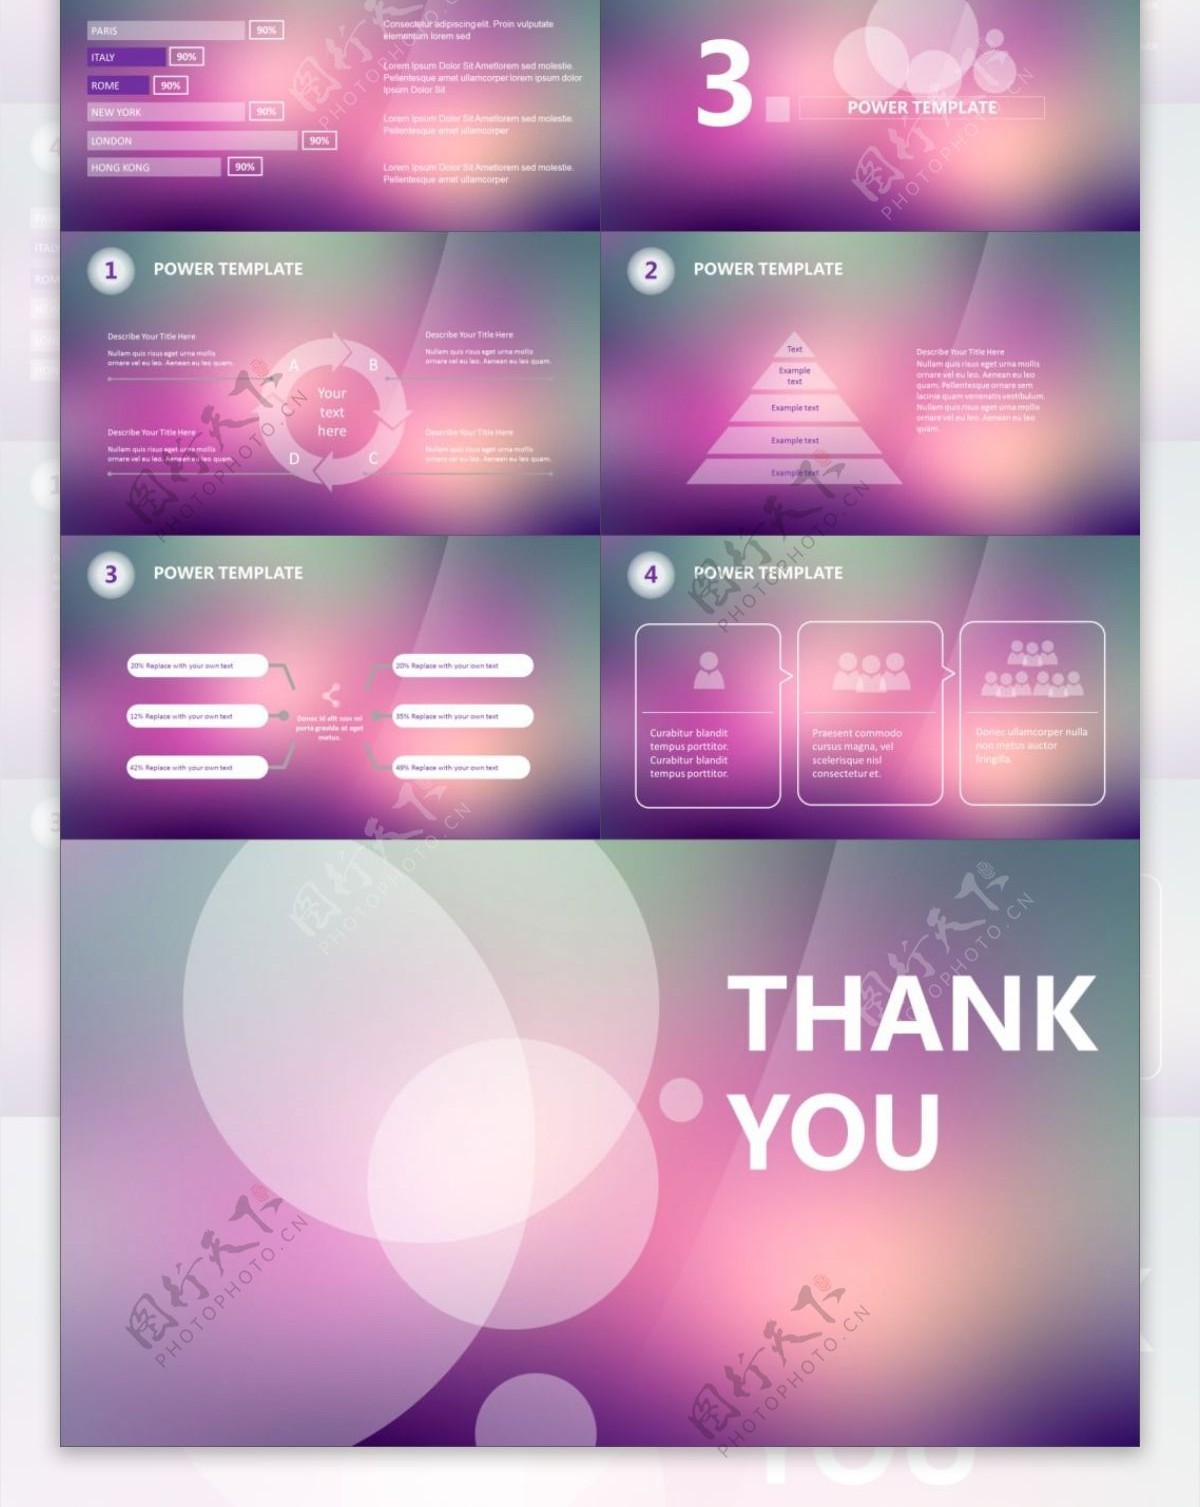 半透明圆创意封面朦胧紫背景简约iOS风格ppt模板